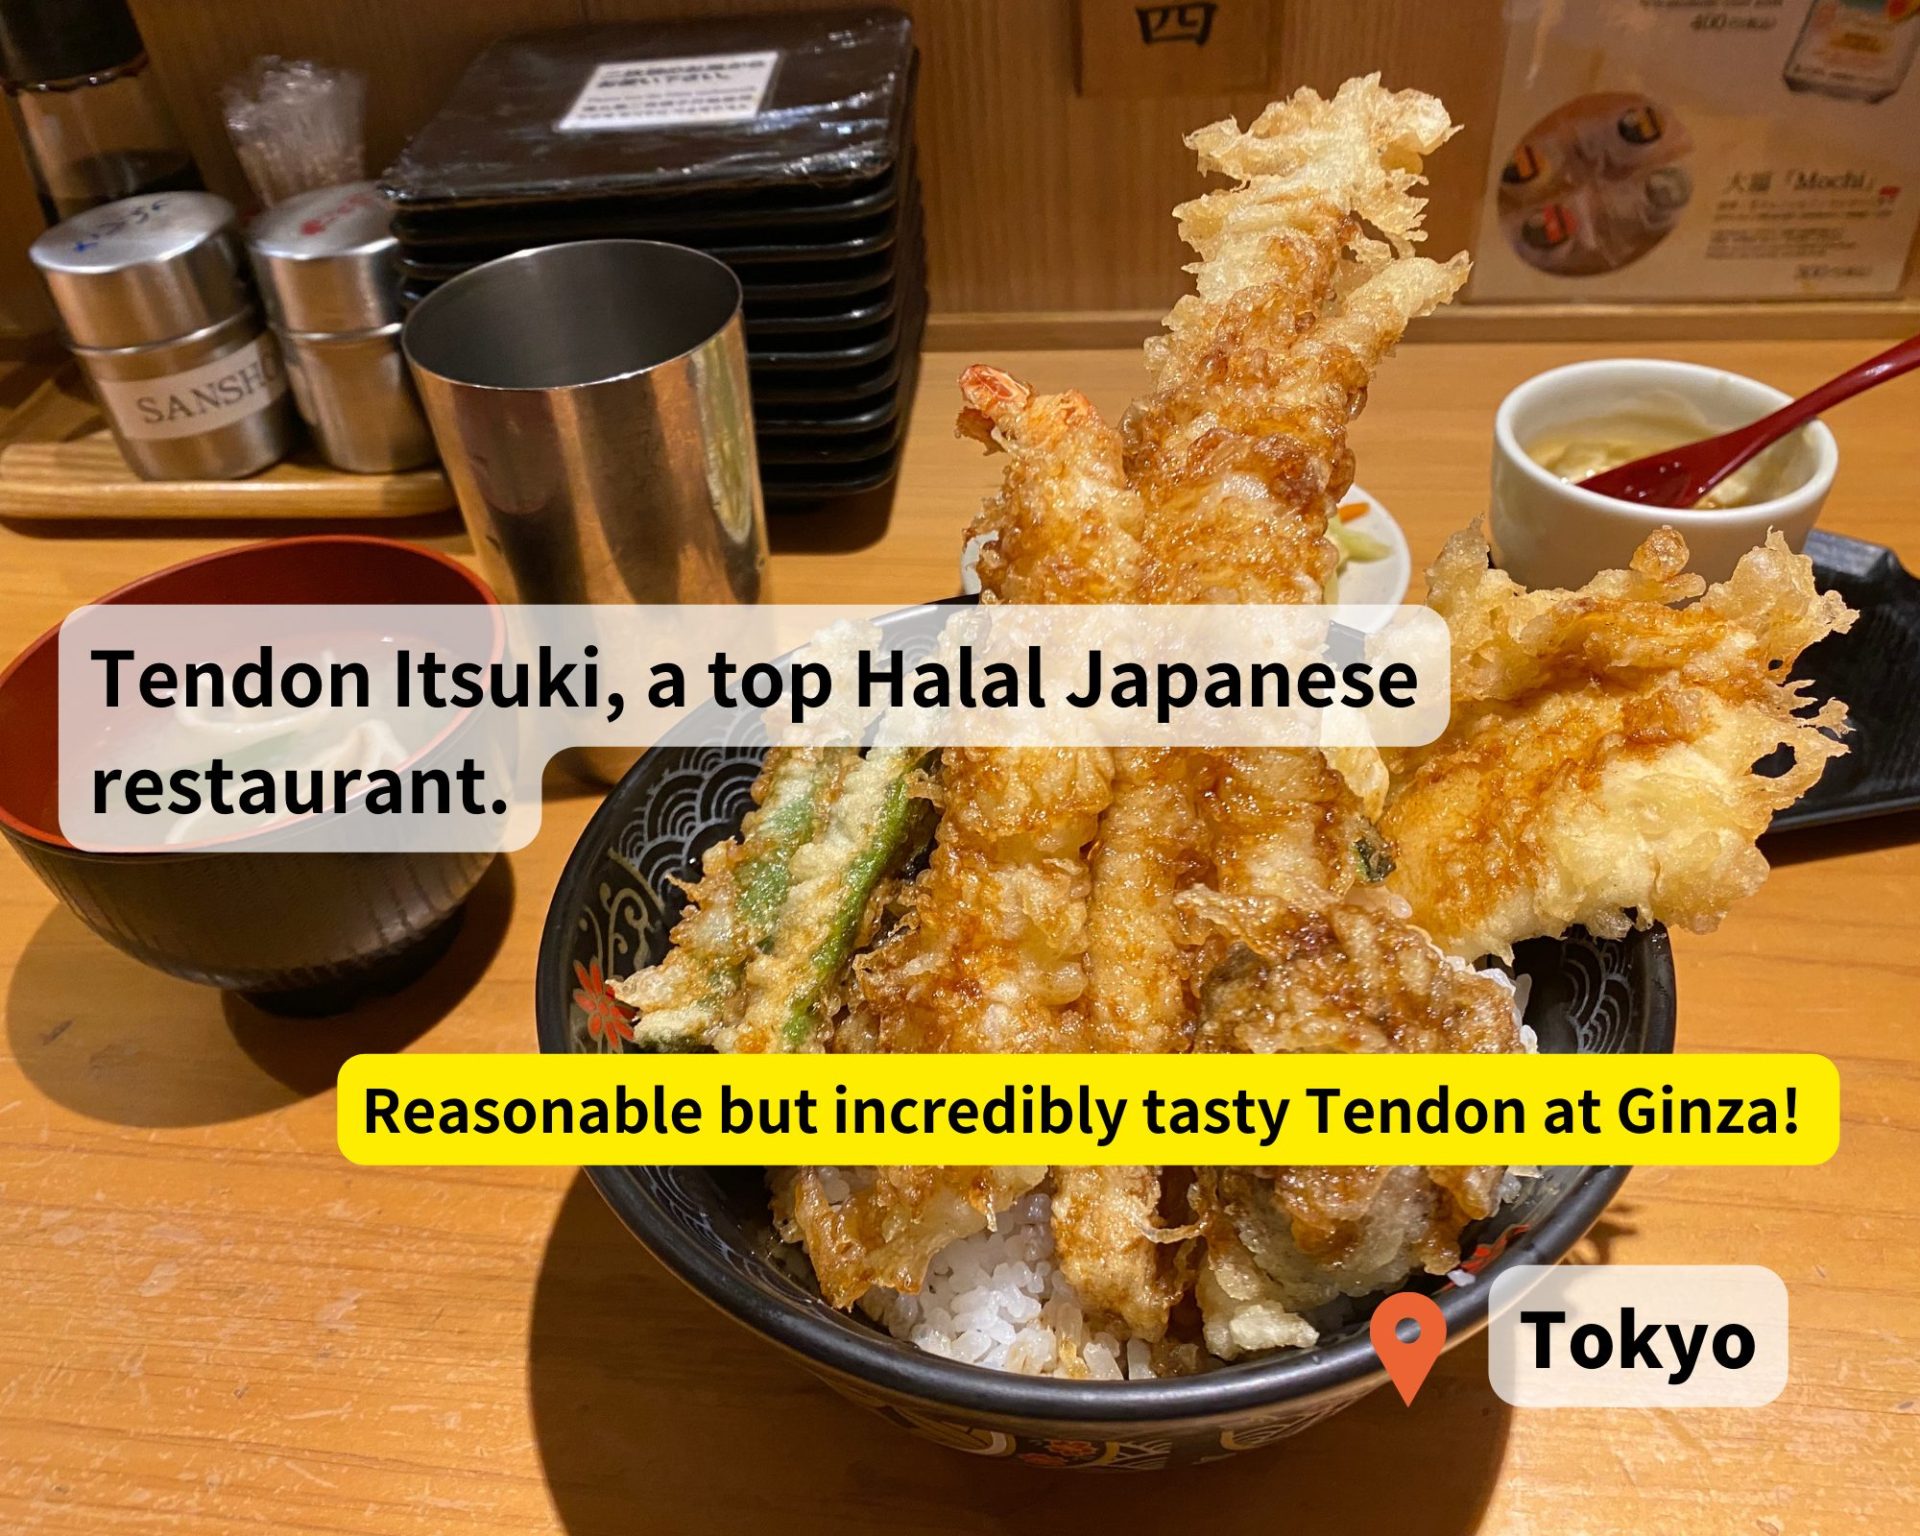 Tendon Itsuki Halal food at Ginza